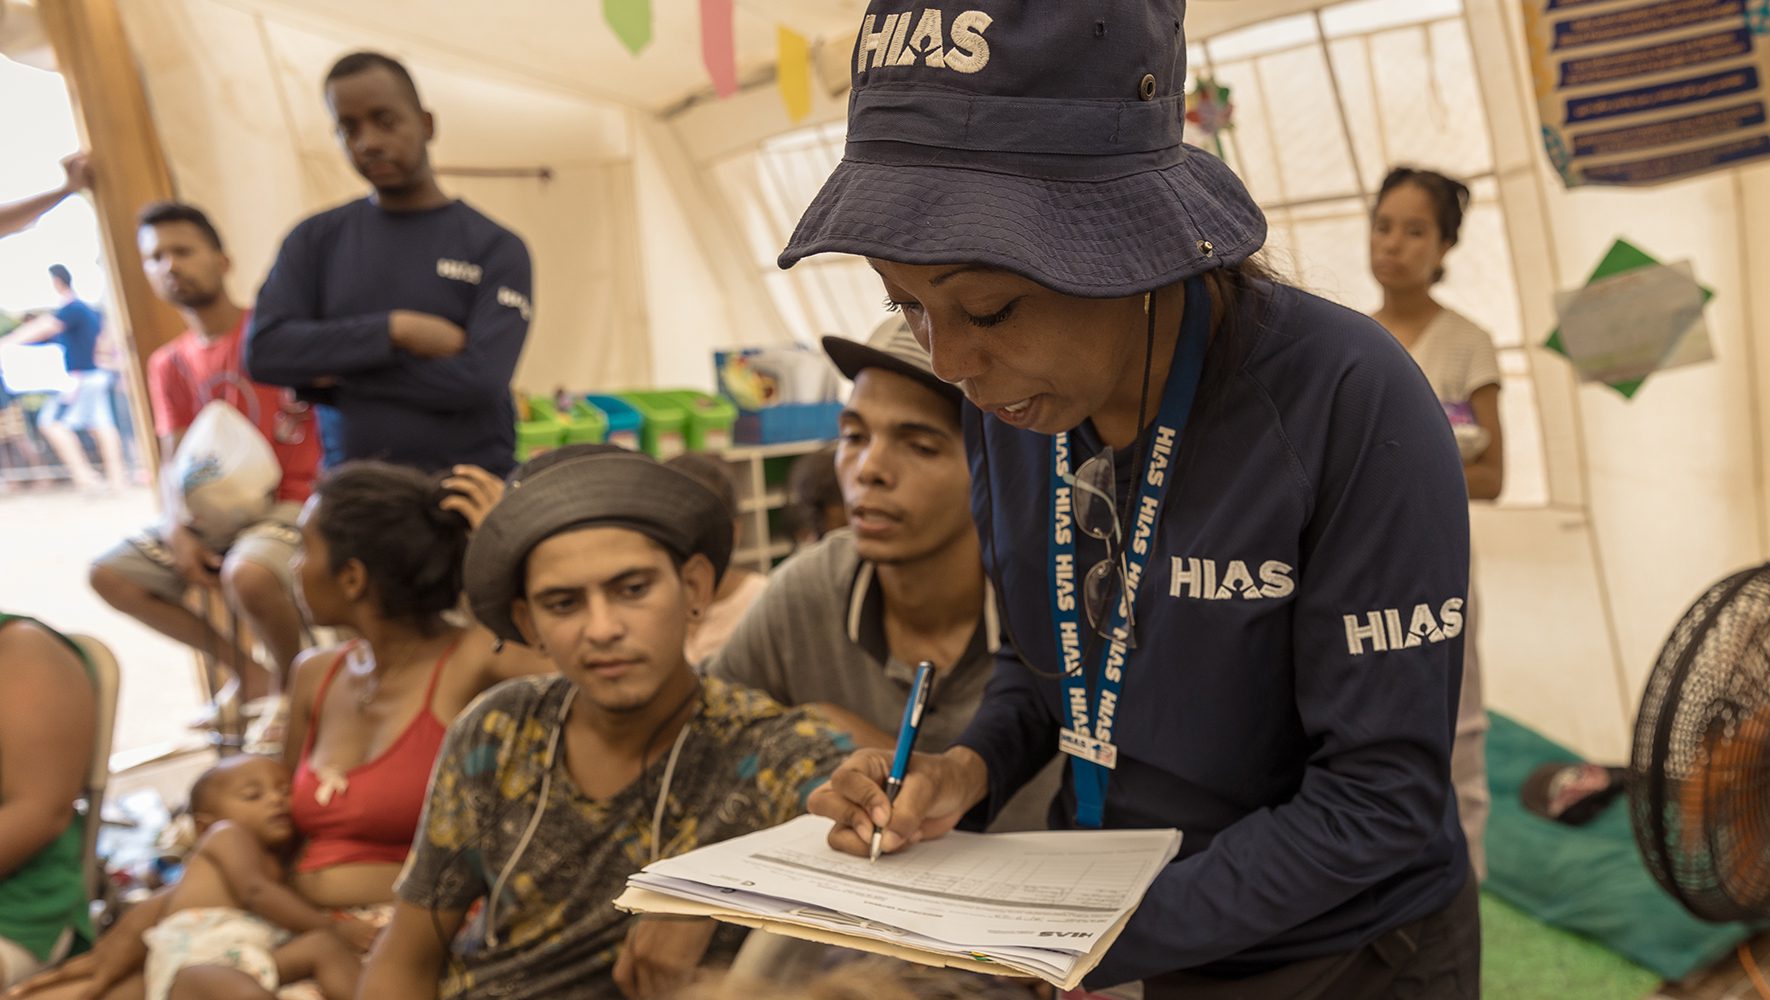 Dilsa Sanchez, miembro del personal de HIAS, entrega suministros personales a los migrantes en la tienda de apoyo de HIAS en el Centro de Recepción de Migrantes de Lajas Blancas, Panamá. | En Tapón del Darién, los refugiados encuentran ayuda a lo largo del camino | HIAS